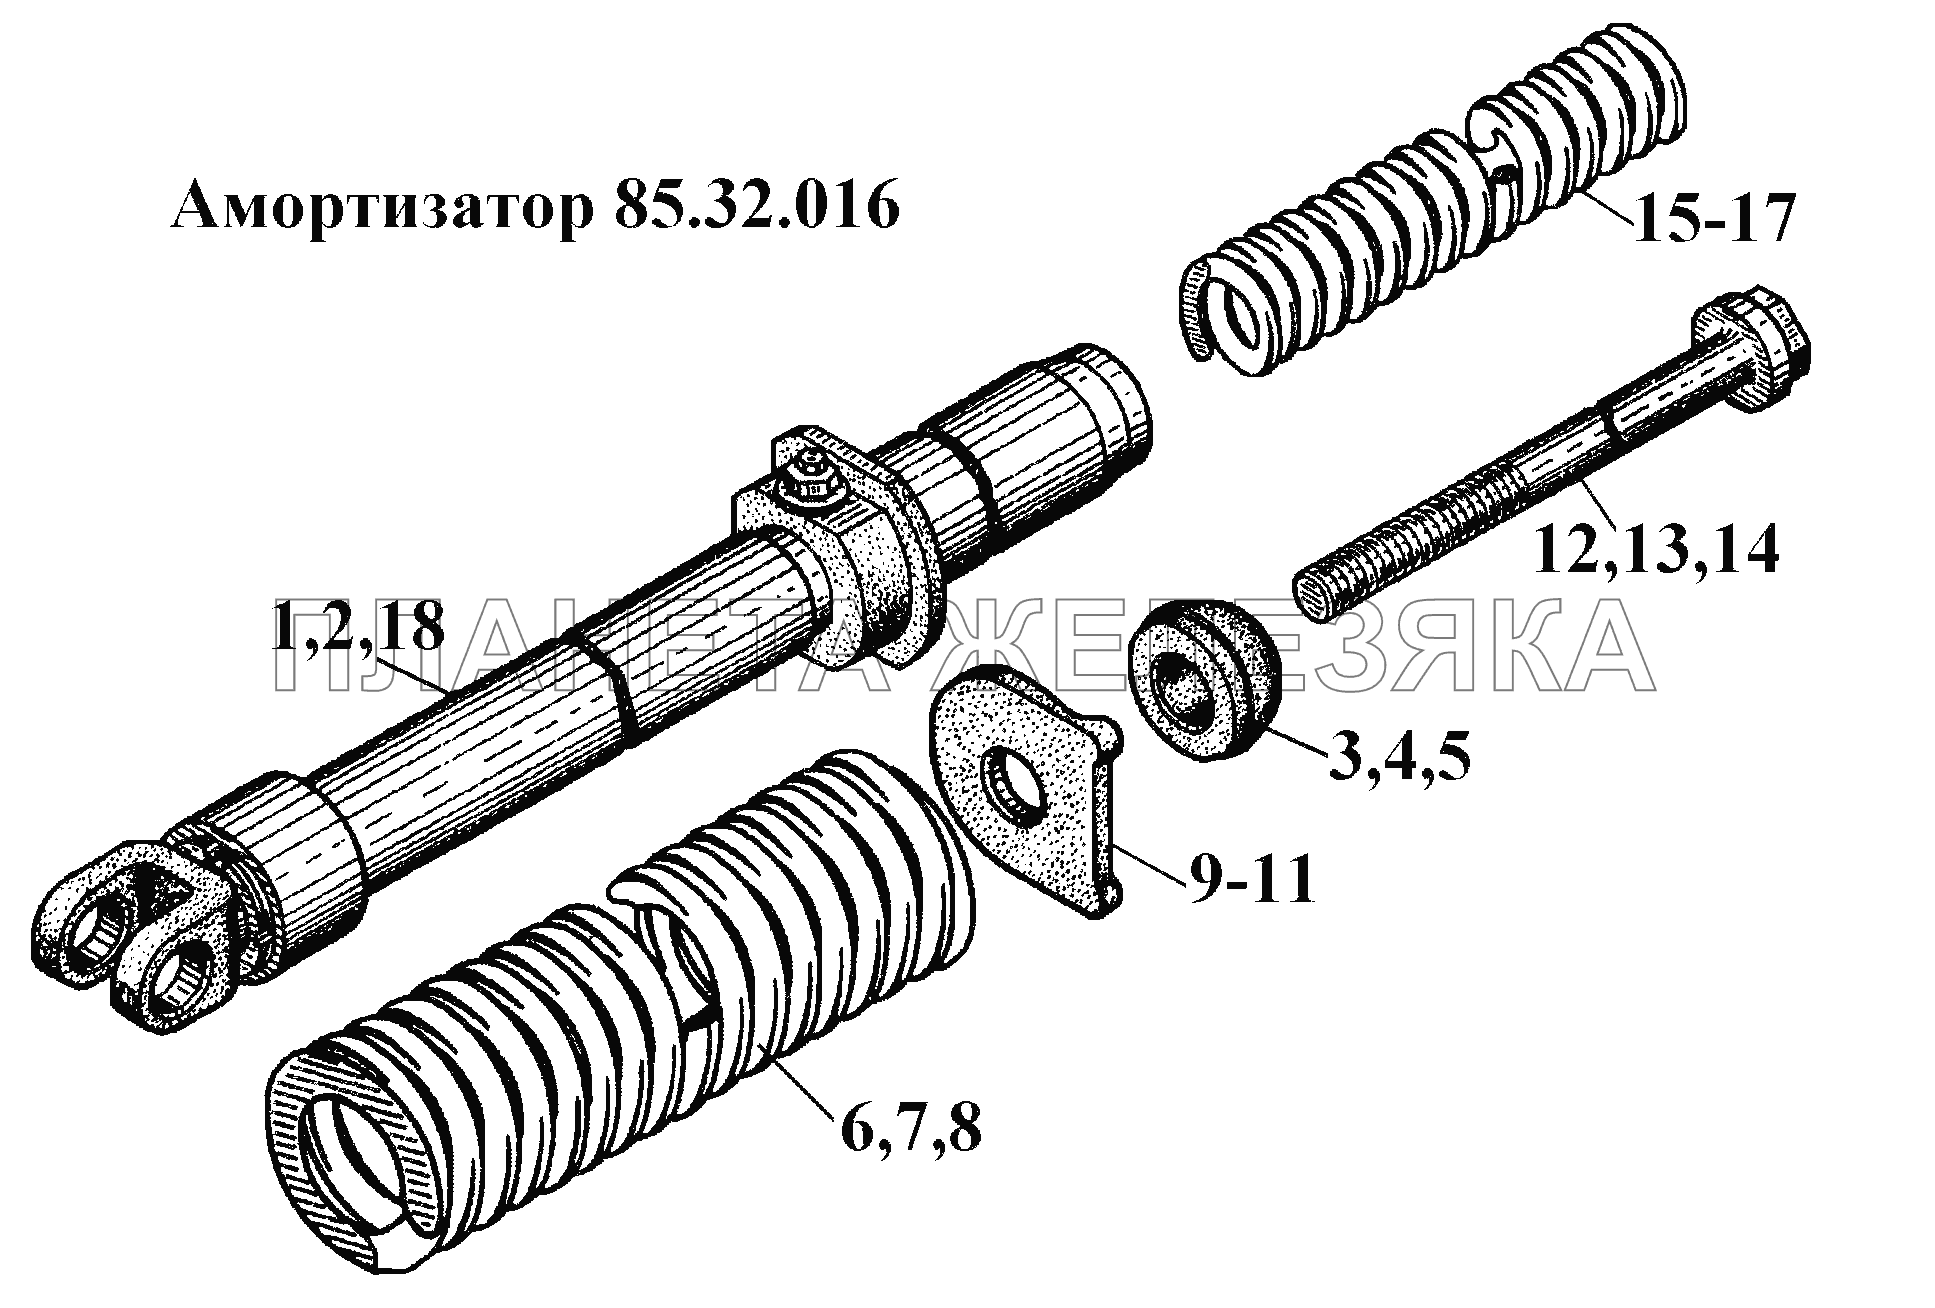 Амортизатор 85.32.016 ВТ-100Д